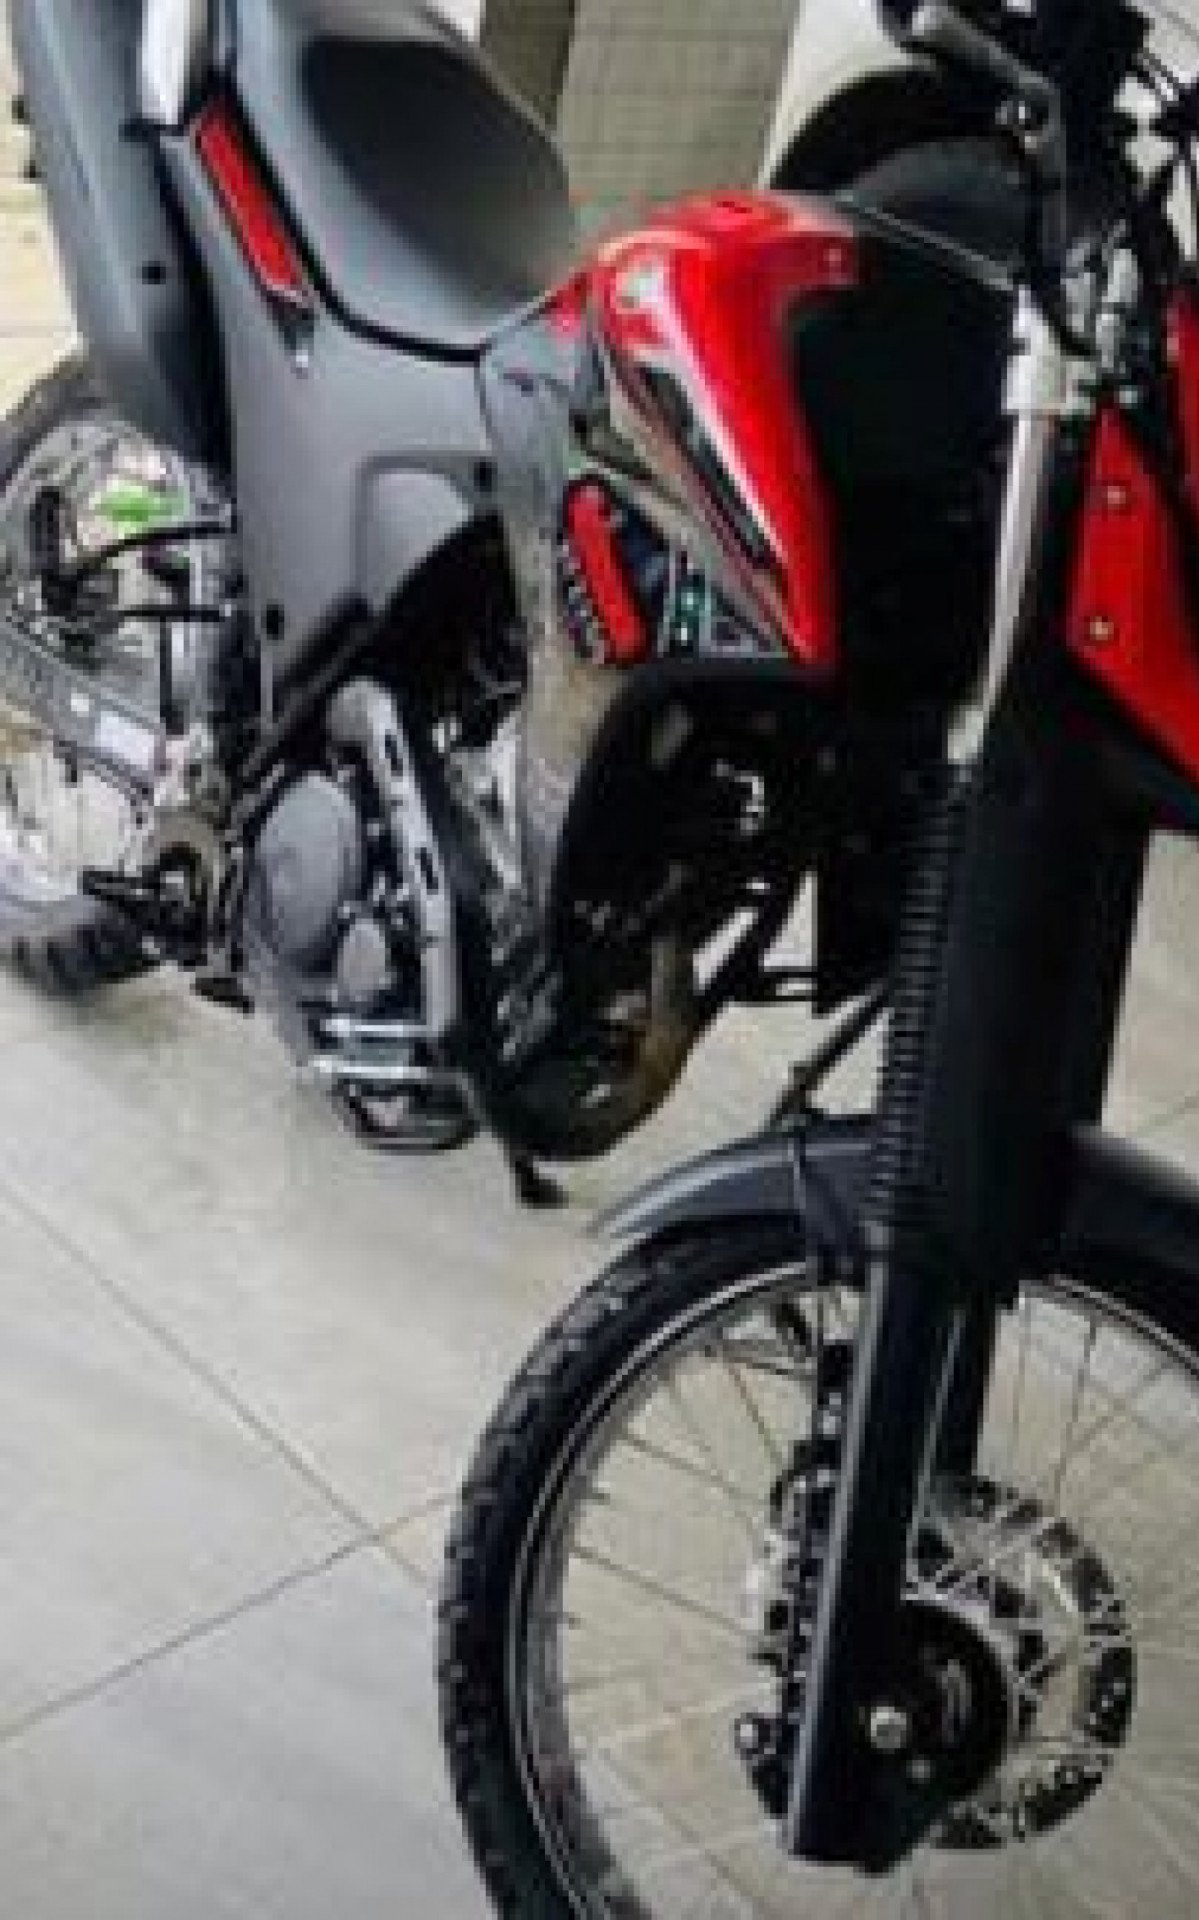 Diego chegou a divulgar nas redes sociais a foto de sua moto roubada - Reprodução/Redes Sociais